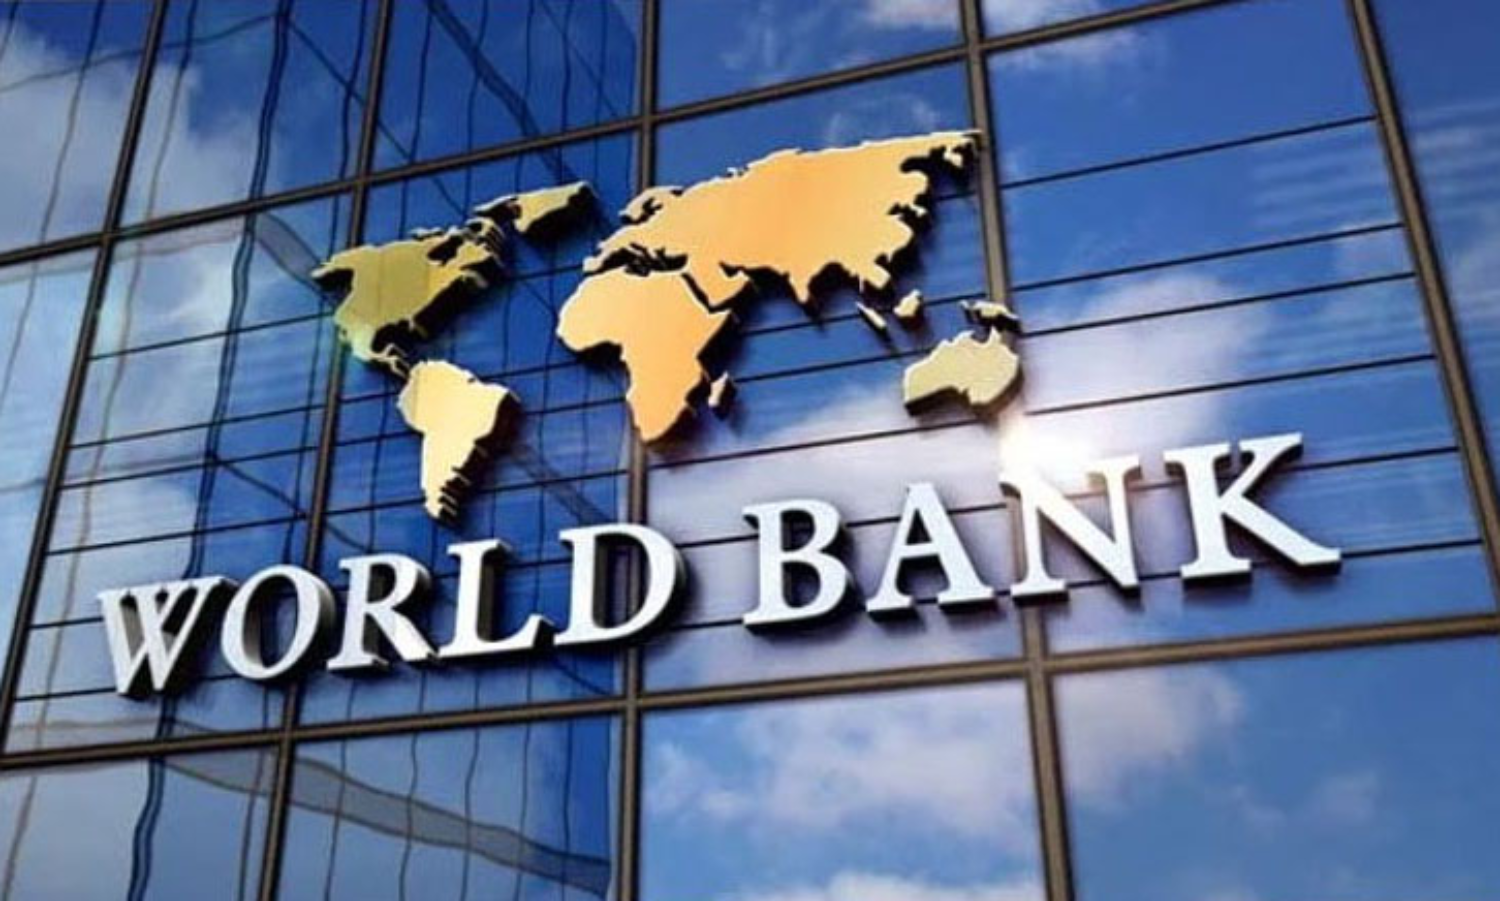 world bank group,satisfaction,vision,india. appreciation ,உலக வங்கிக்குழு, திருப்தி, தொலைநோக்கு, இந்தியா. பாராட்டு